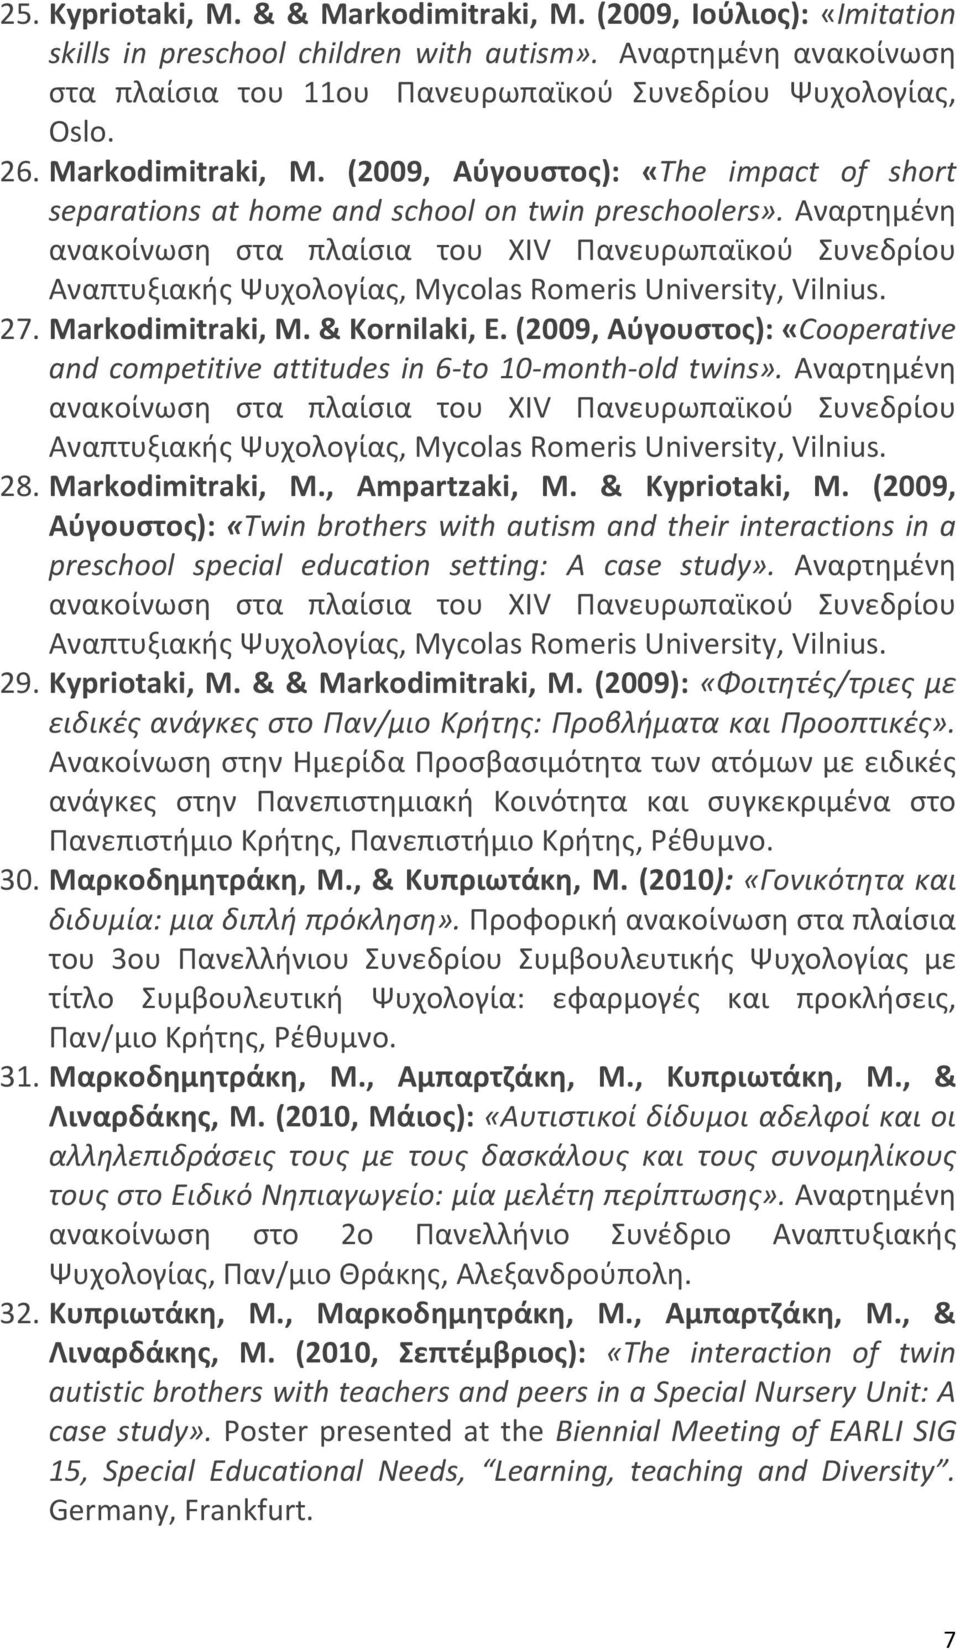 Αναρτημένη ανακοίνωση στα πλαίσια του XIV Πανευρωπαϊκού Συνεδρίου Αναπτυξιακής Ψυχολογίας, Mycolas Romeris University, Vilnius. 27. Markodimitraki, M. & Kornilaki, E.